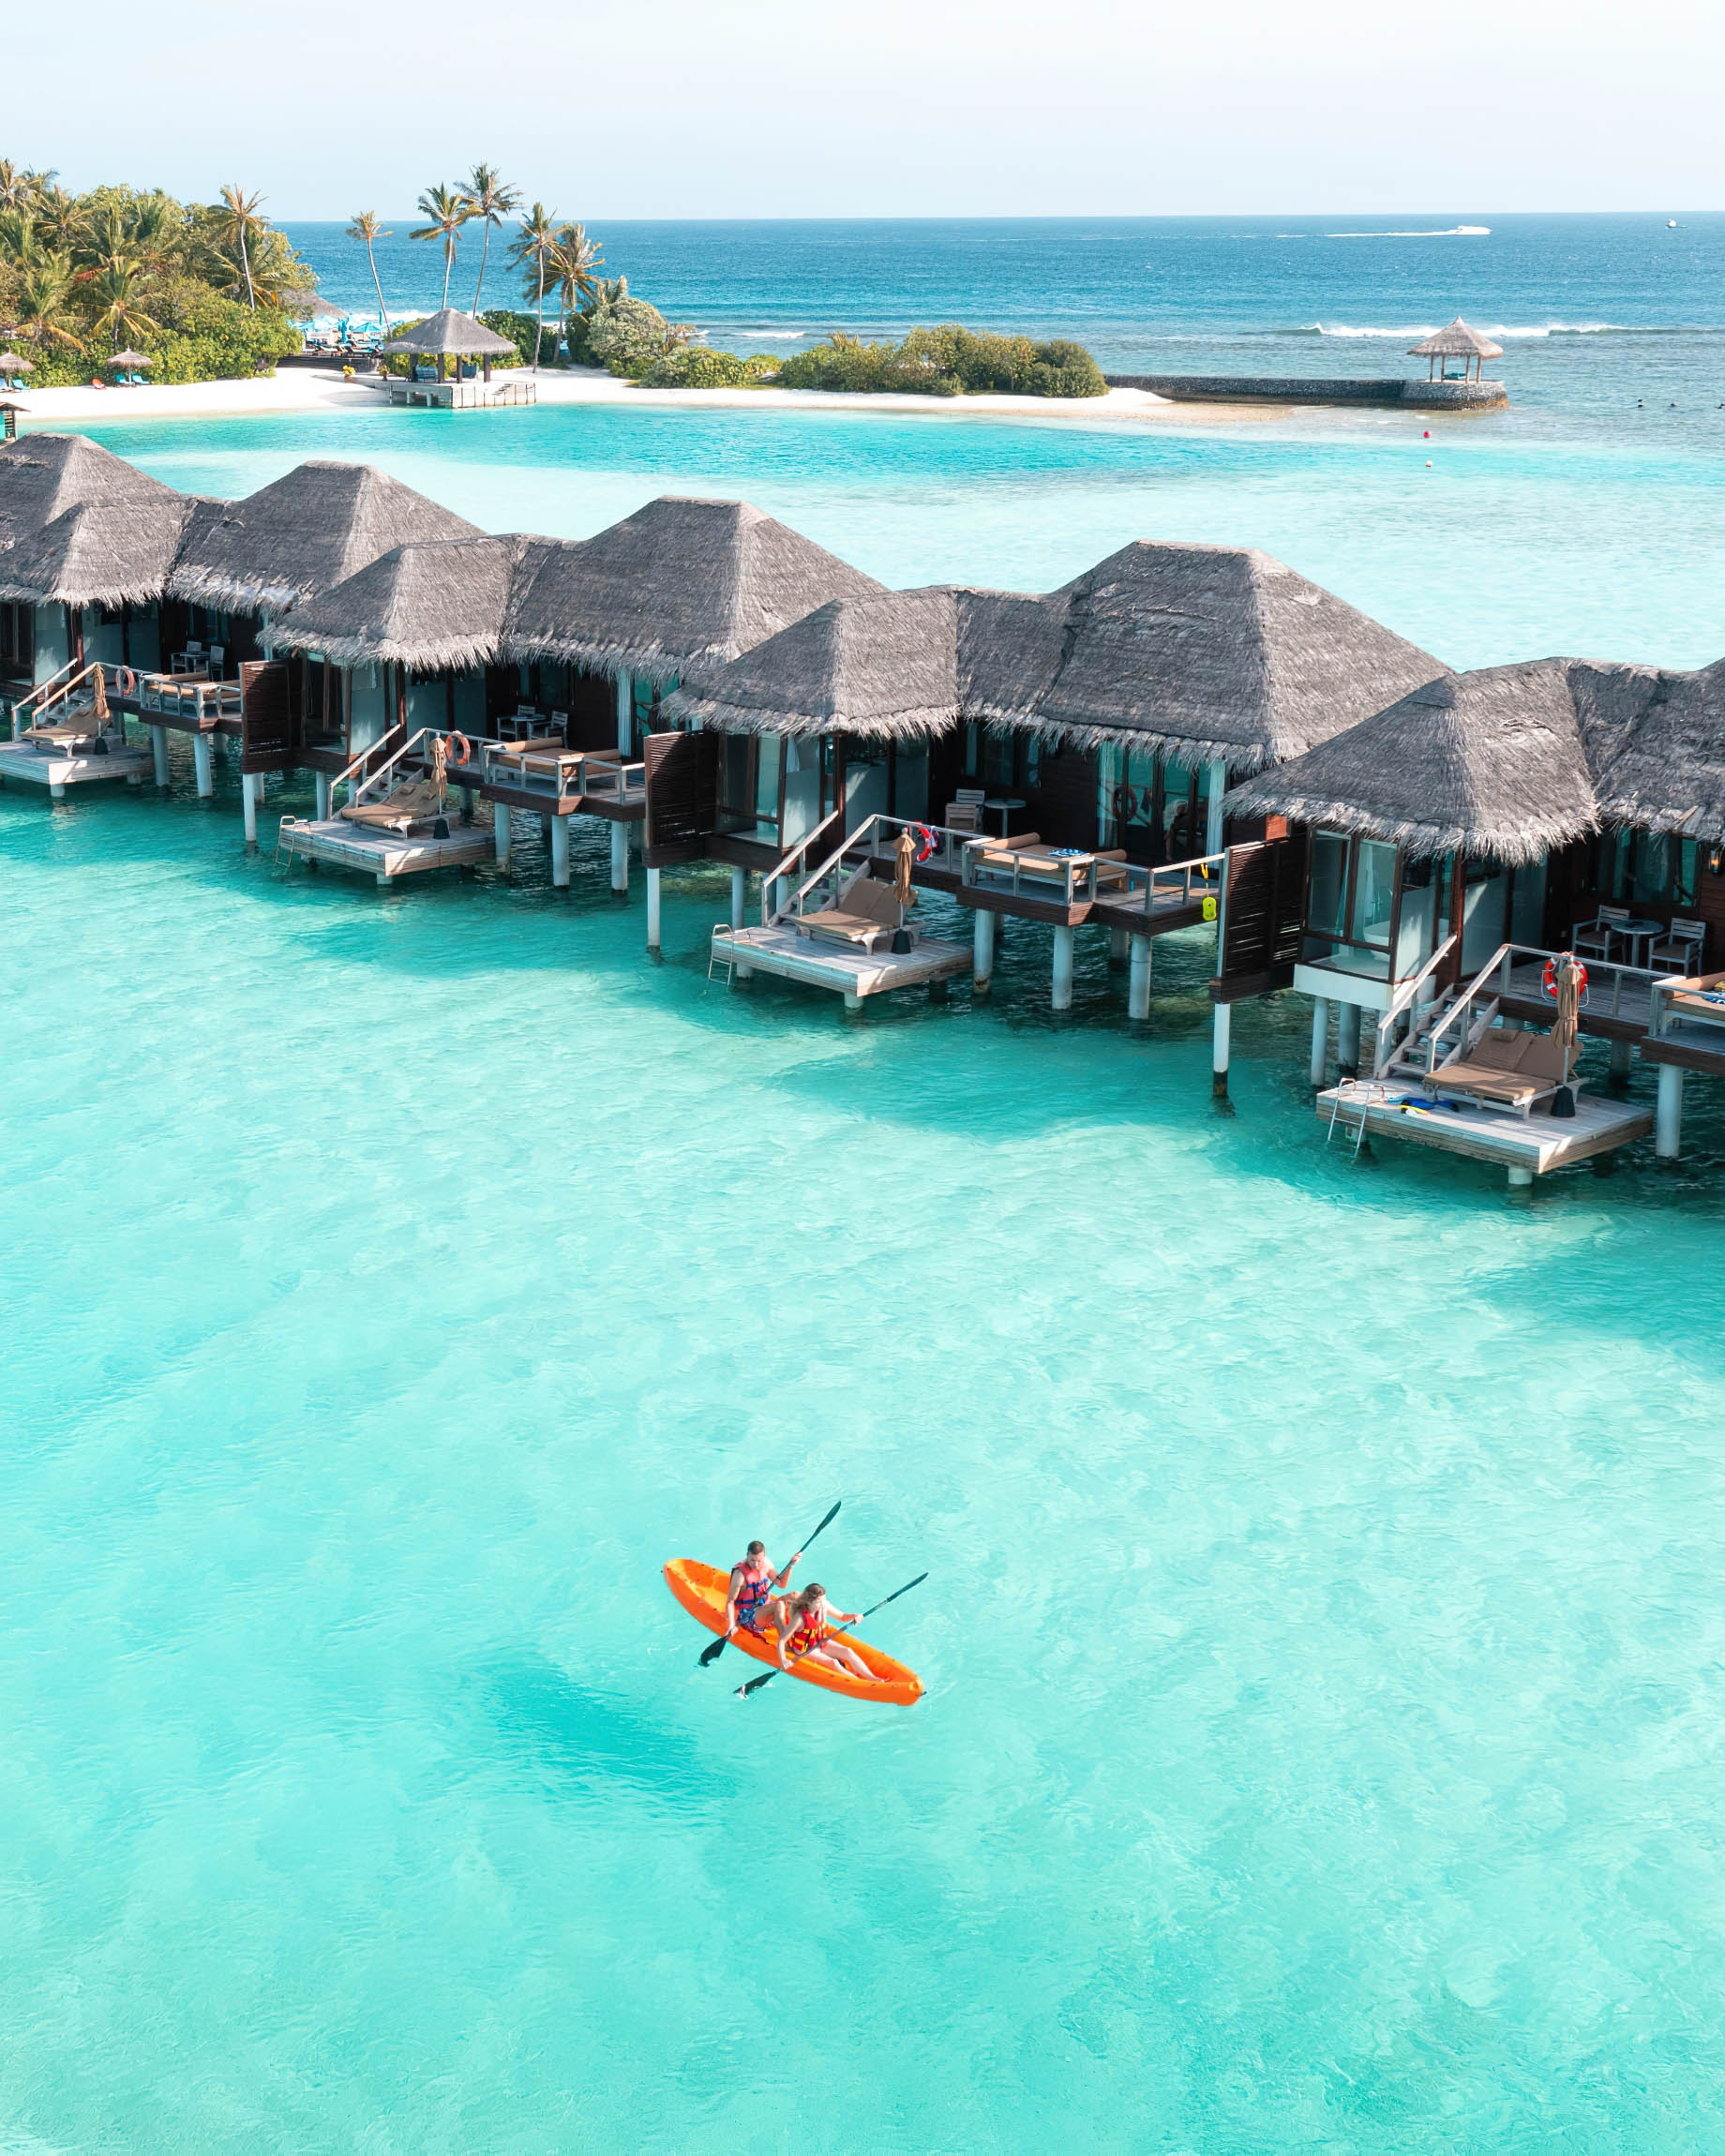 Anantara Veli Maldives Resort - South Male Atoll, Maldives - Kayaking